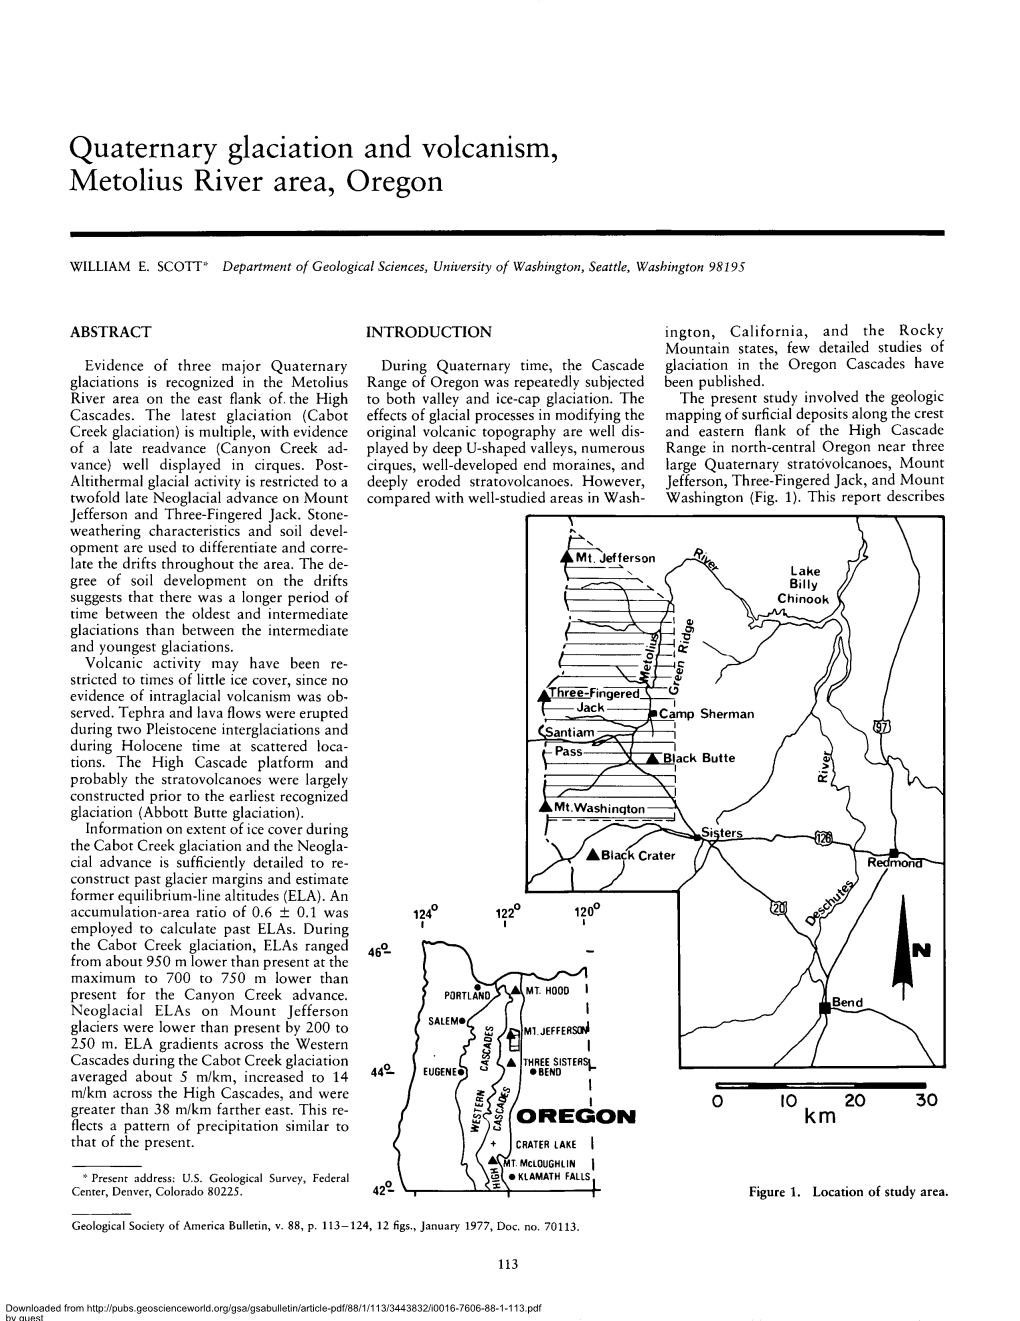 Quaternary Glaciation and Volcanism, Metolius River Area, Oregon